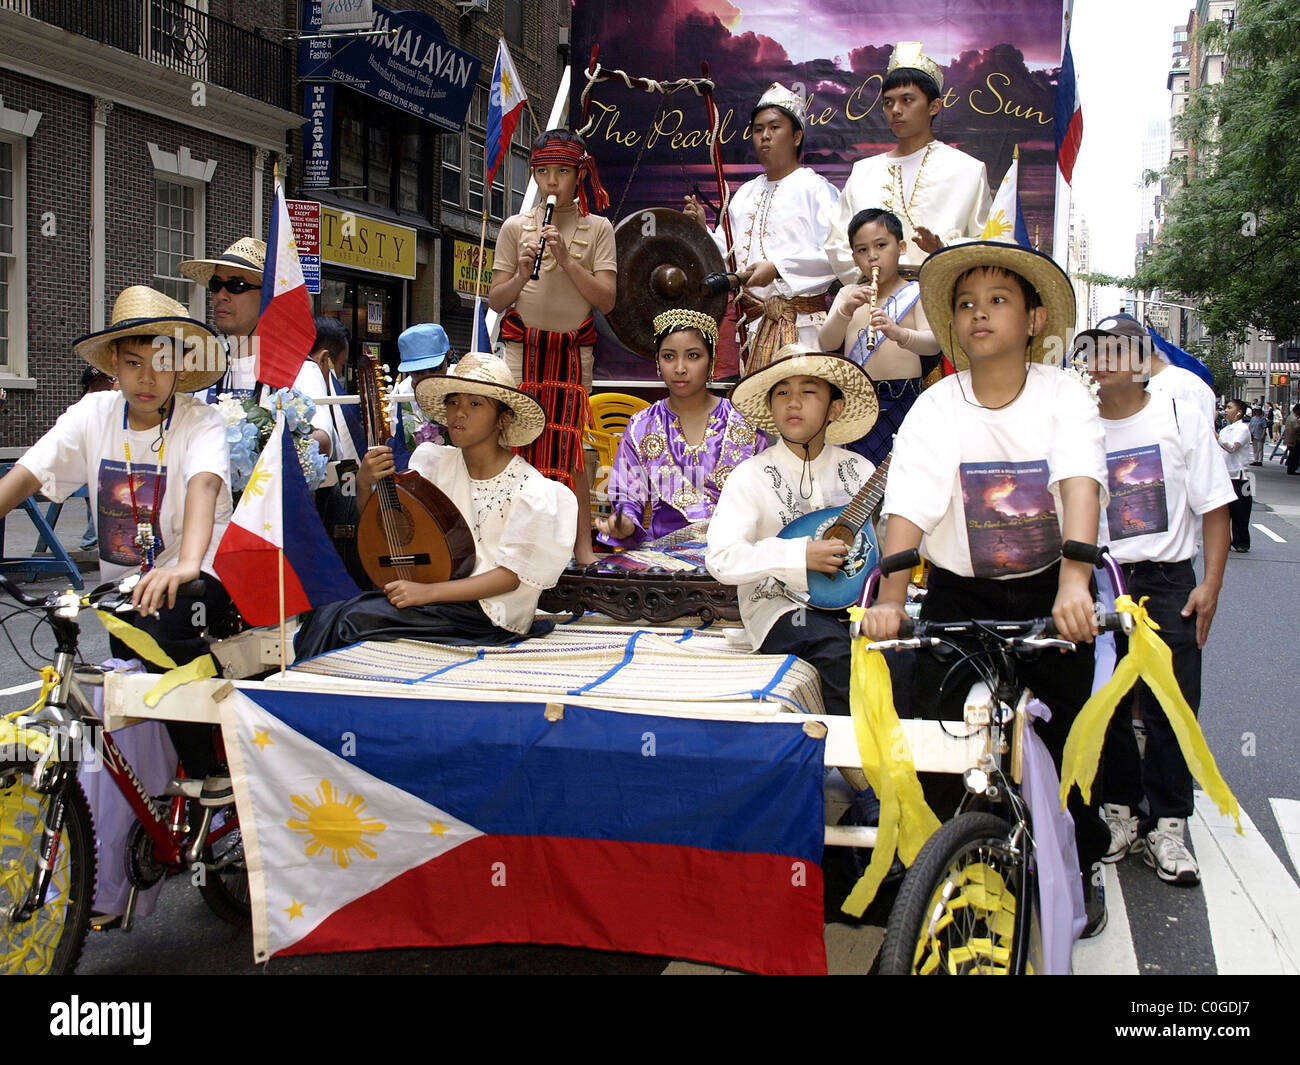 Atmosfera il centodecimo anniversario di indipendenza filippina parata del giorno su Madison Avenue a New York City, Stati Uniti d'America - 01.06.08 Tina Foto Stock